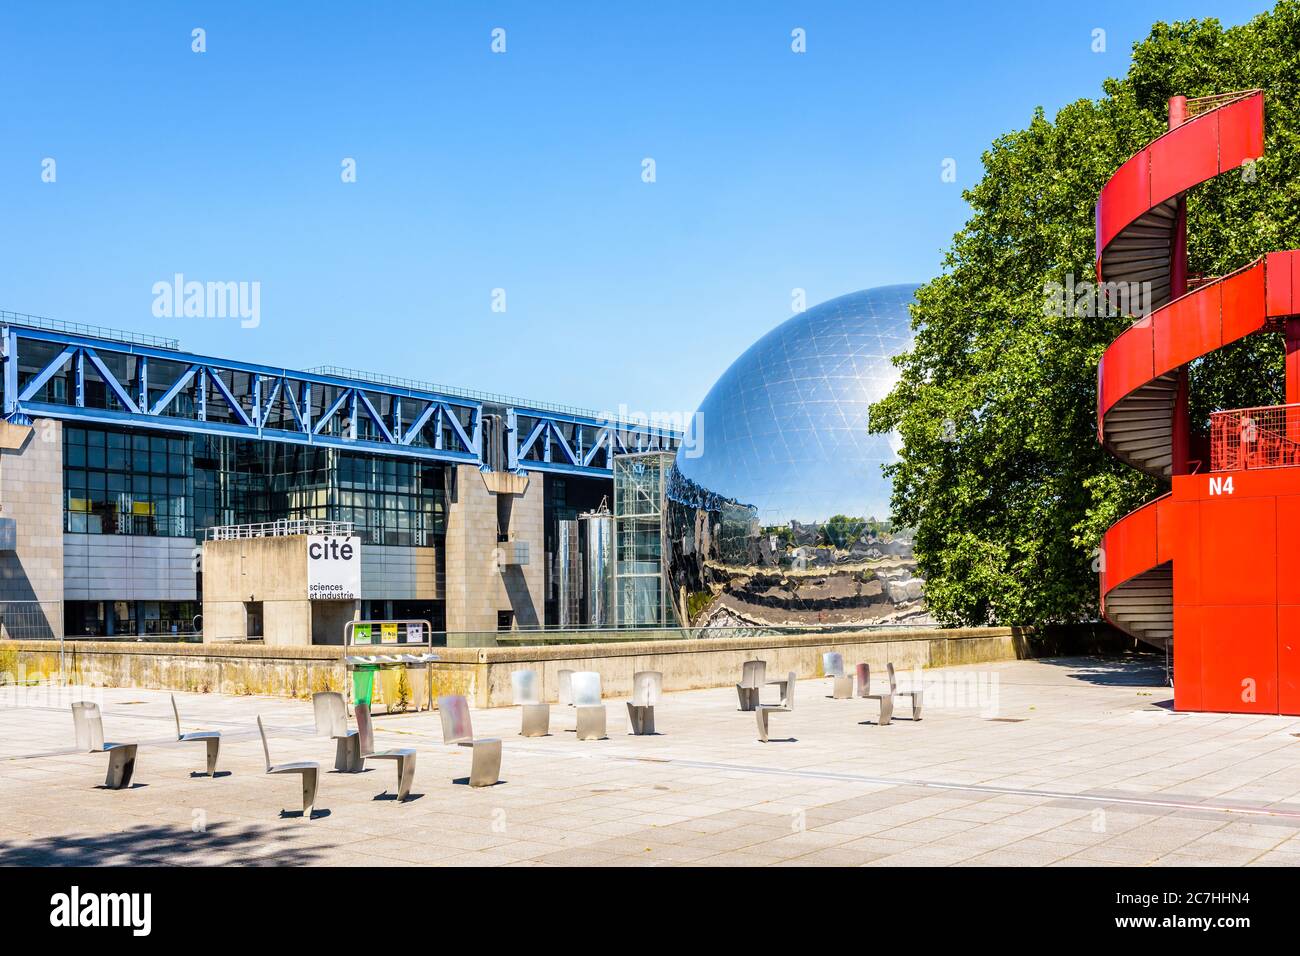 Le bâtiment Cité des Sciences et de l'Industrie, musée des Sciences, avec théâtre sphérique la Geode situé dans le Parc de la Villette à Paris, France. Banque D'Images